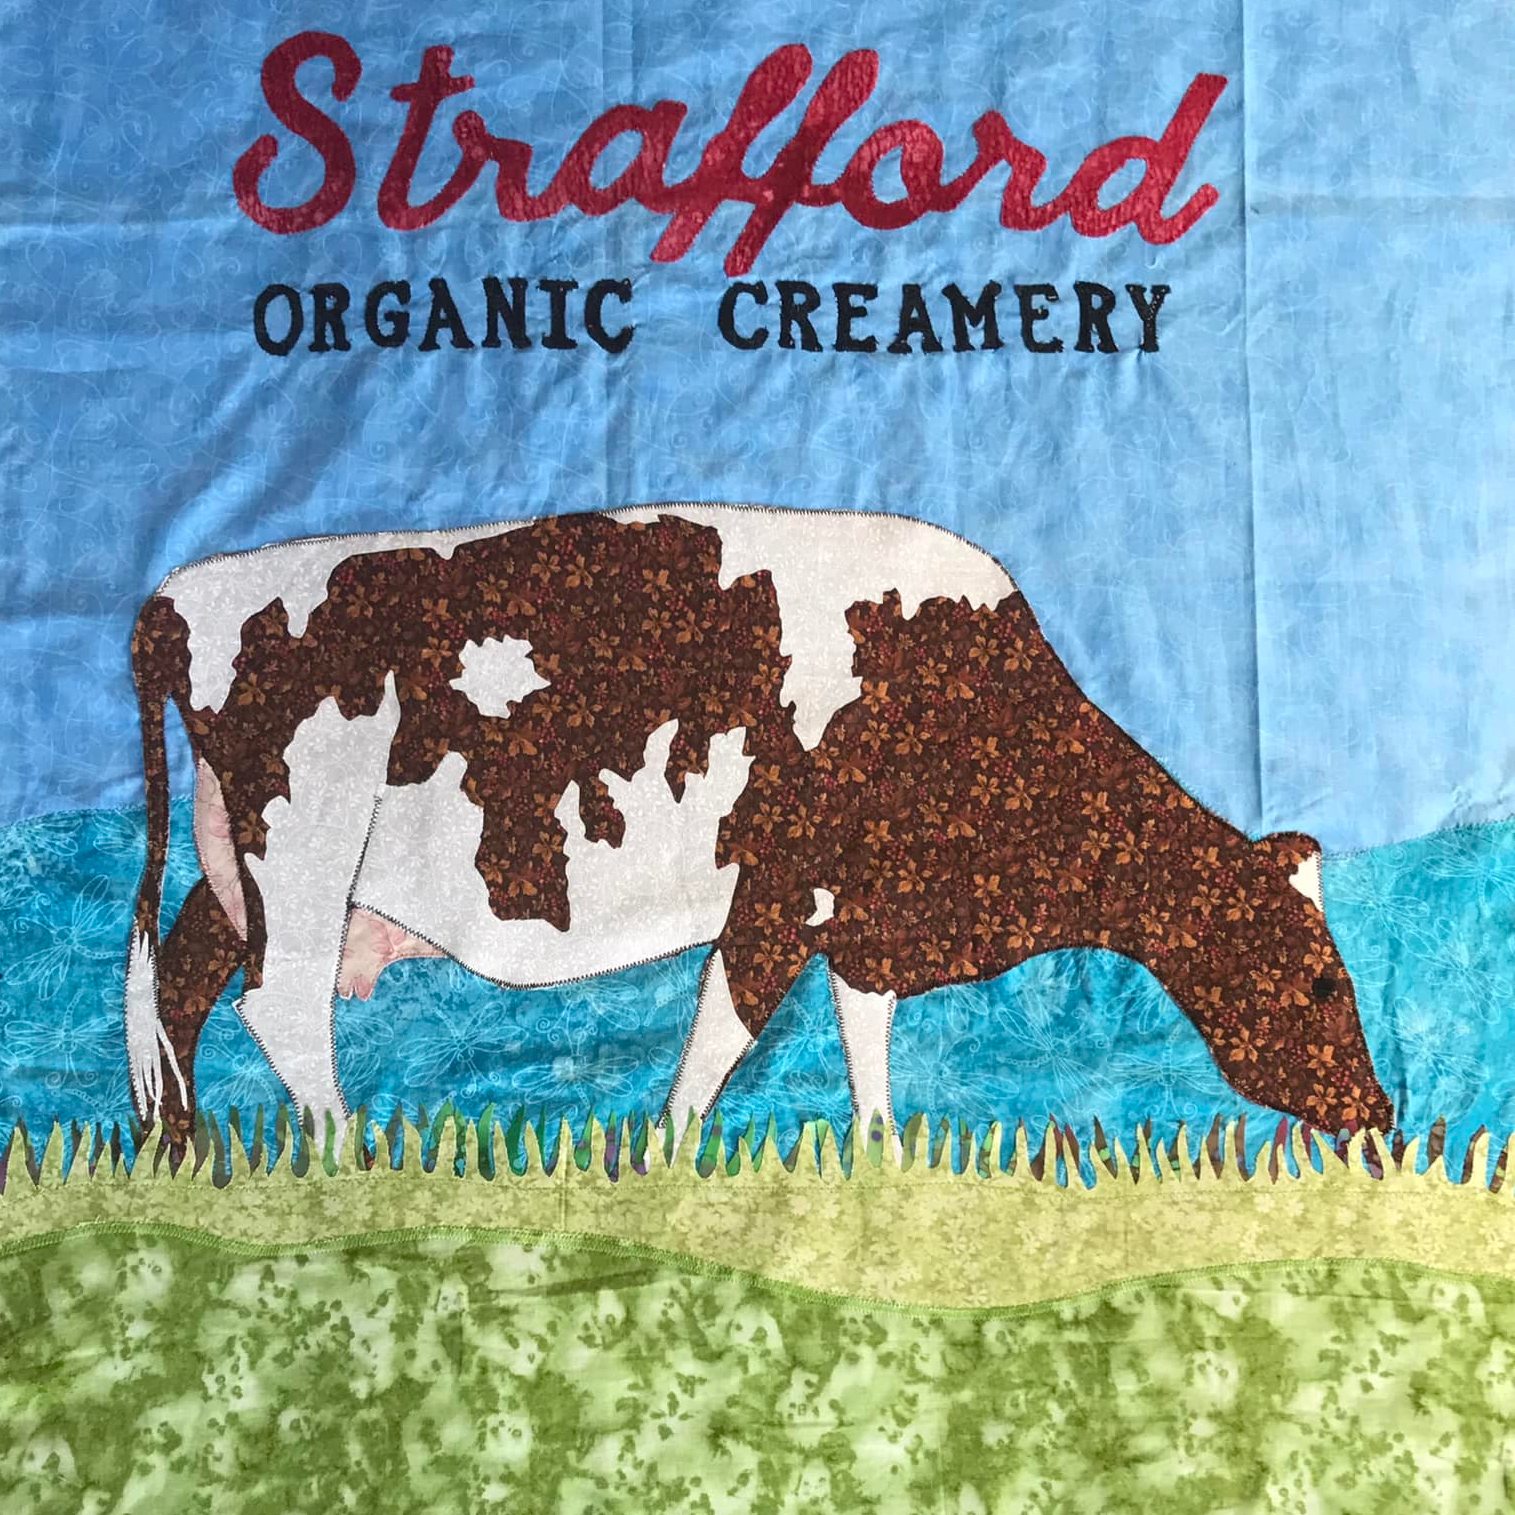 Strafford Organic Creamery 